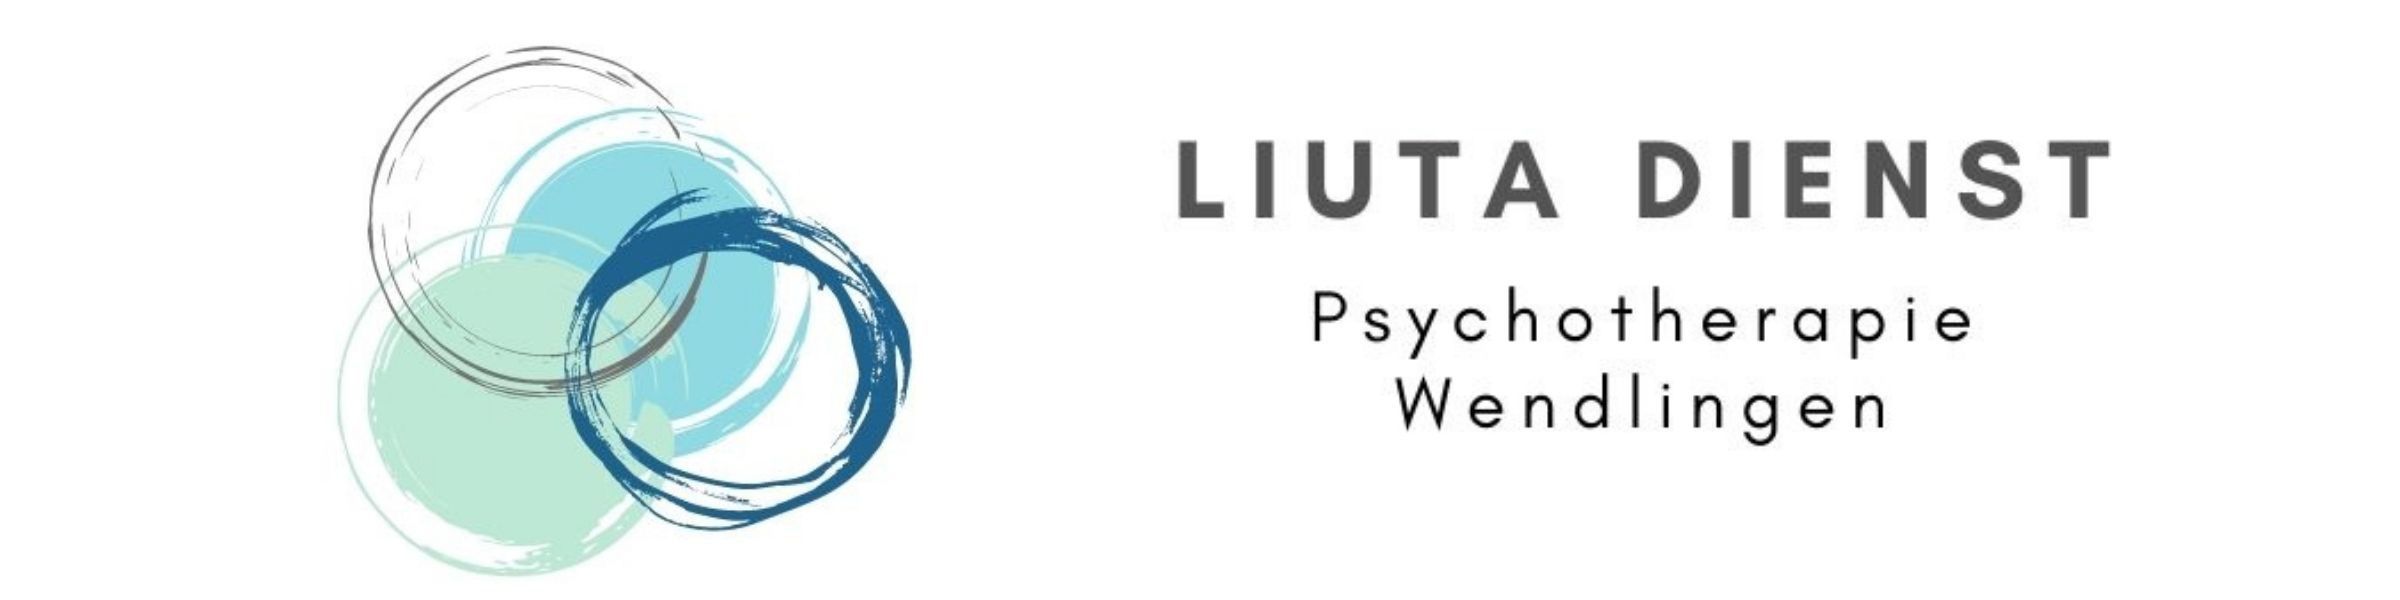 Titelbild von Psychotherapie Wendlingen - Liuta Dienst